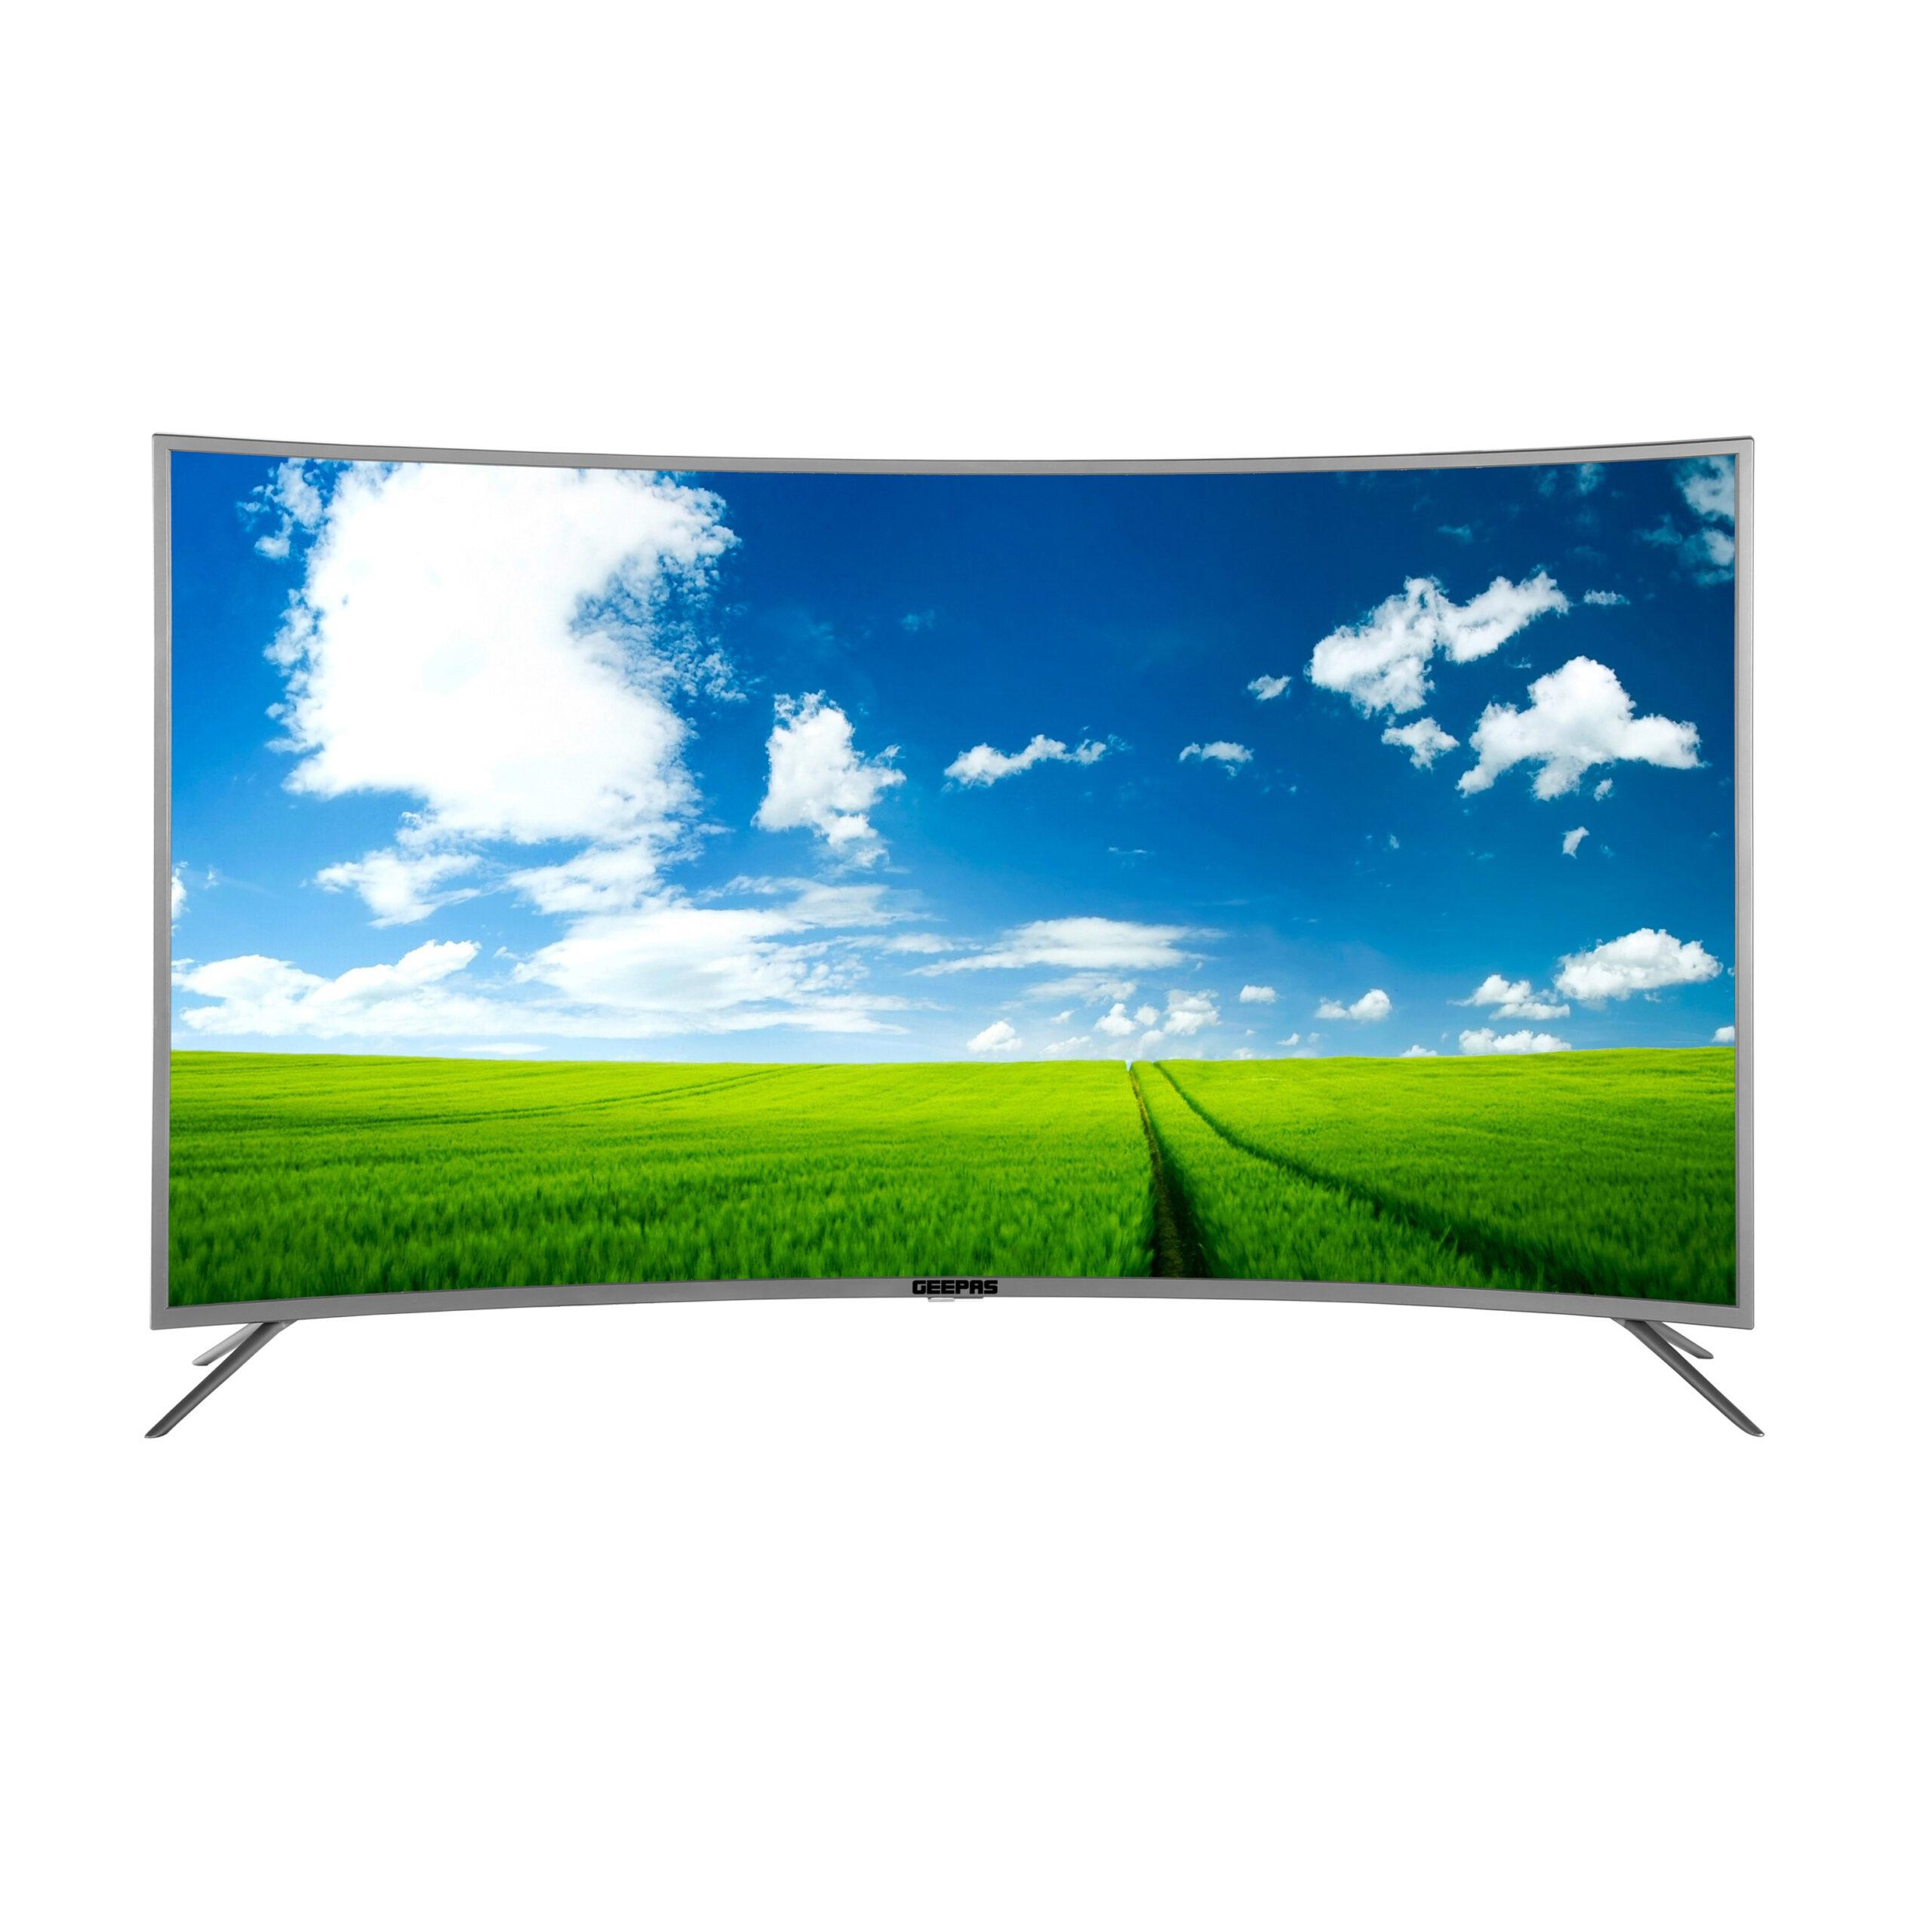 تلفزيون ذكي منحني مقاس 55 انش Geepas Curved Smart Tv 4K Ultra Hd Led Tv